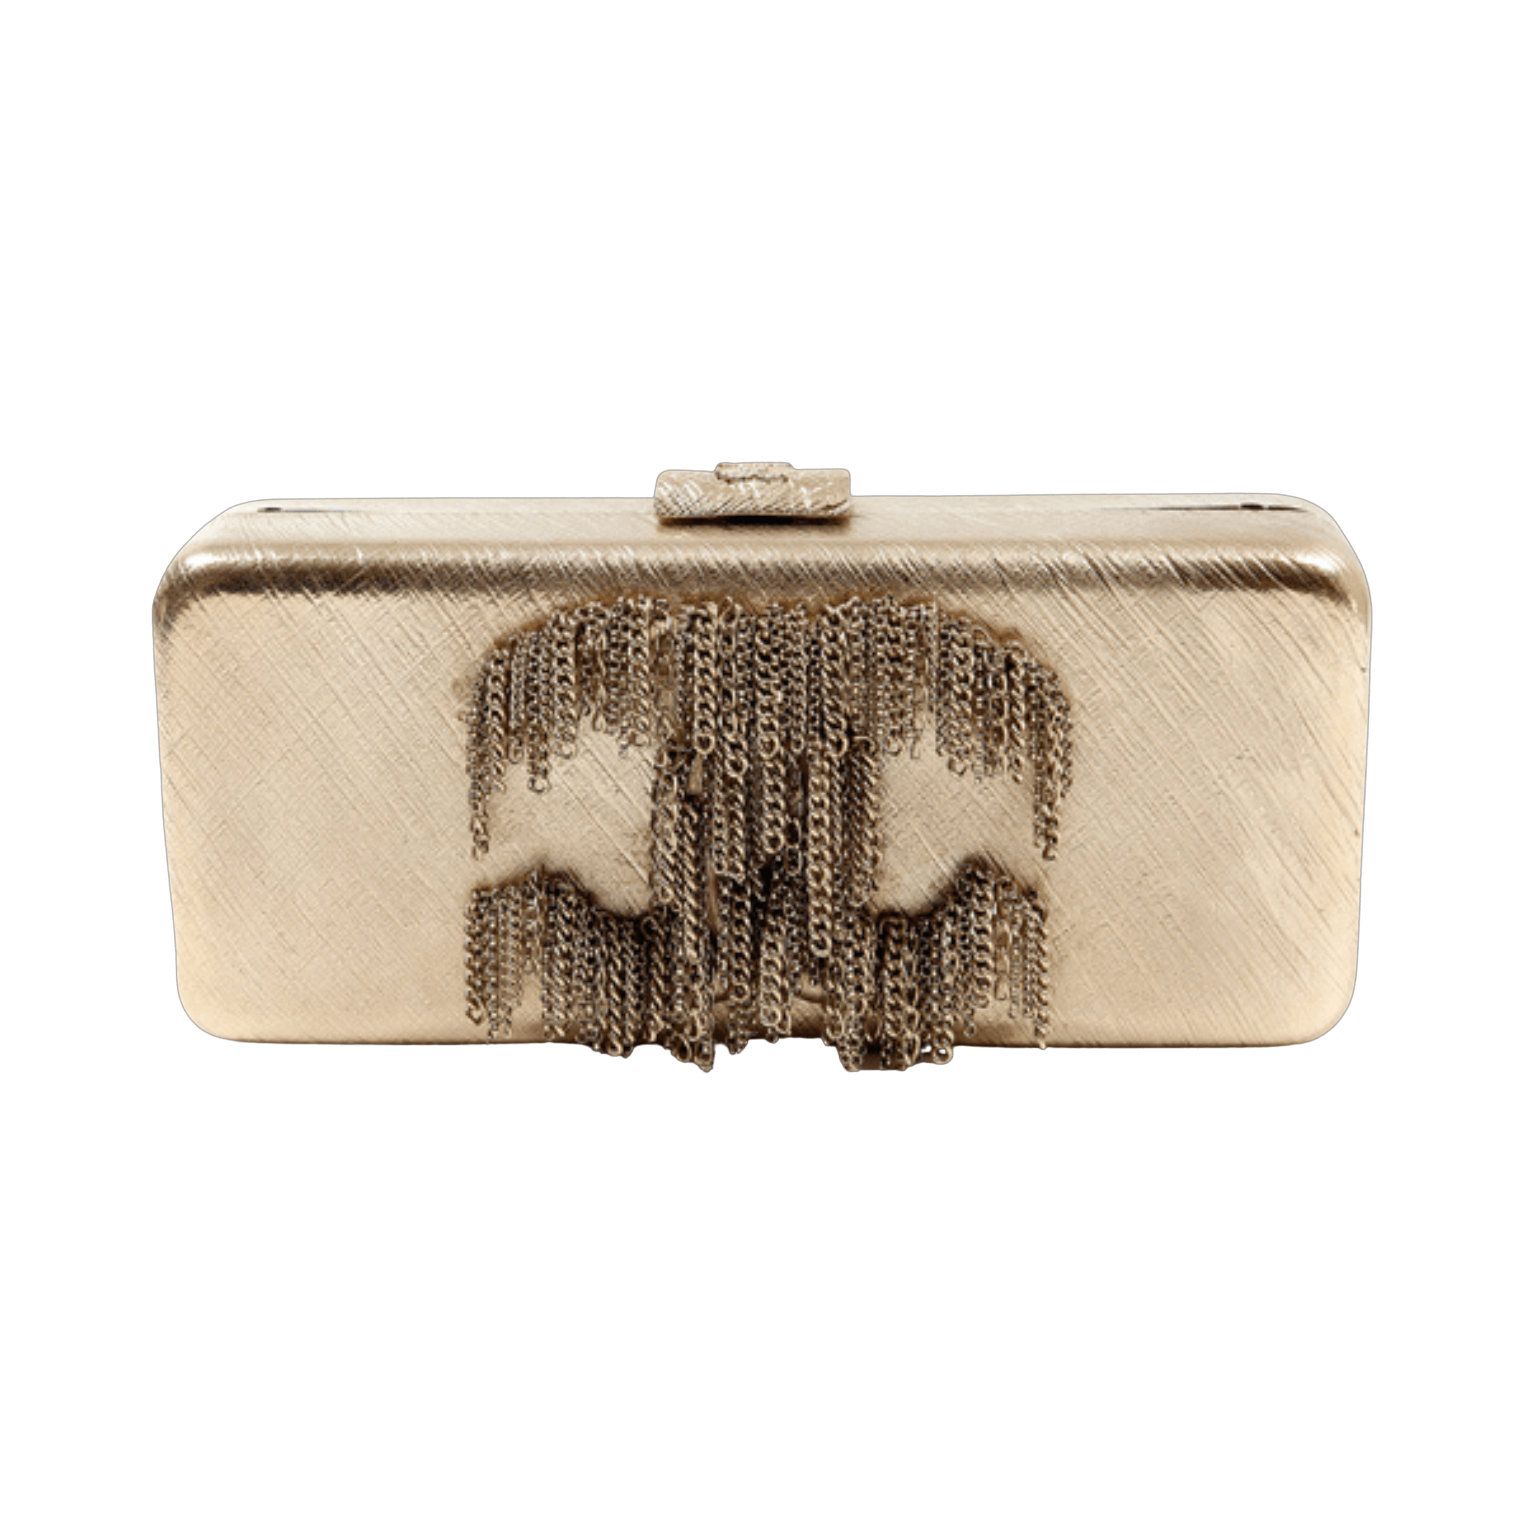 Chanel Resin Bag - 25 For Sale on 1stDibs  chanel bag22, resin handbags,  resin bags